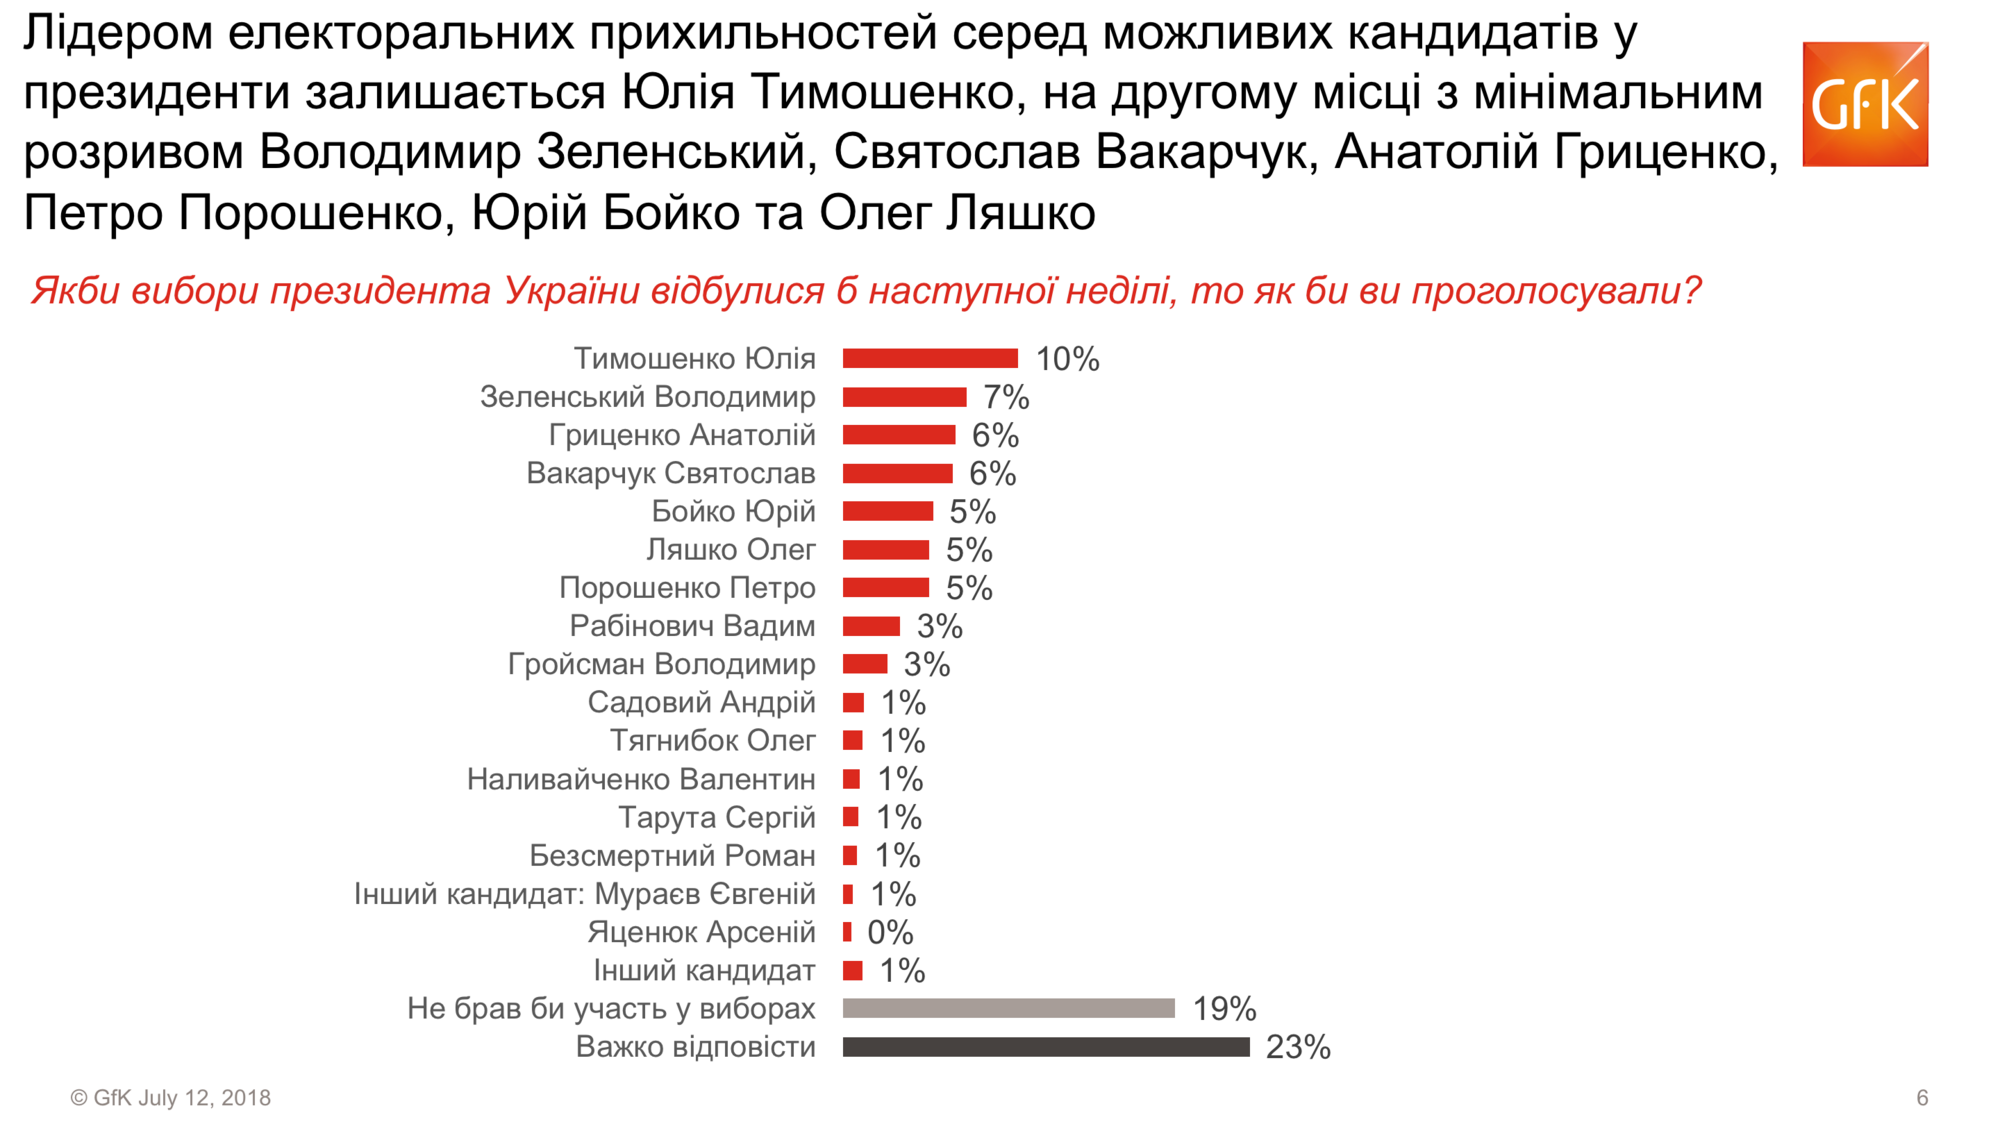 GfK Ukraine: Зеленский – второй в рейтинге президентских симпатий украинцев